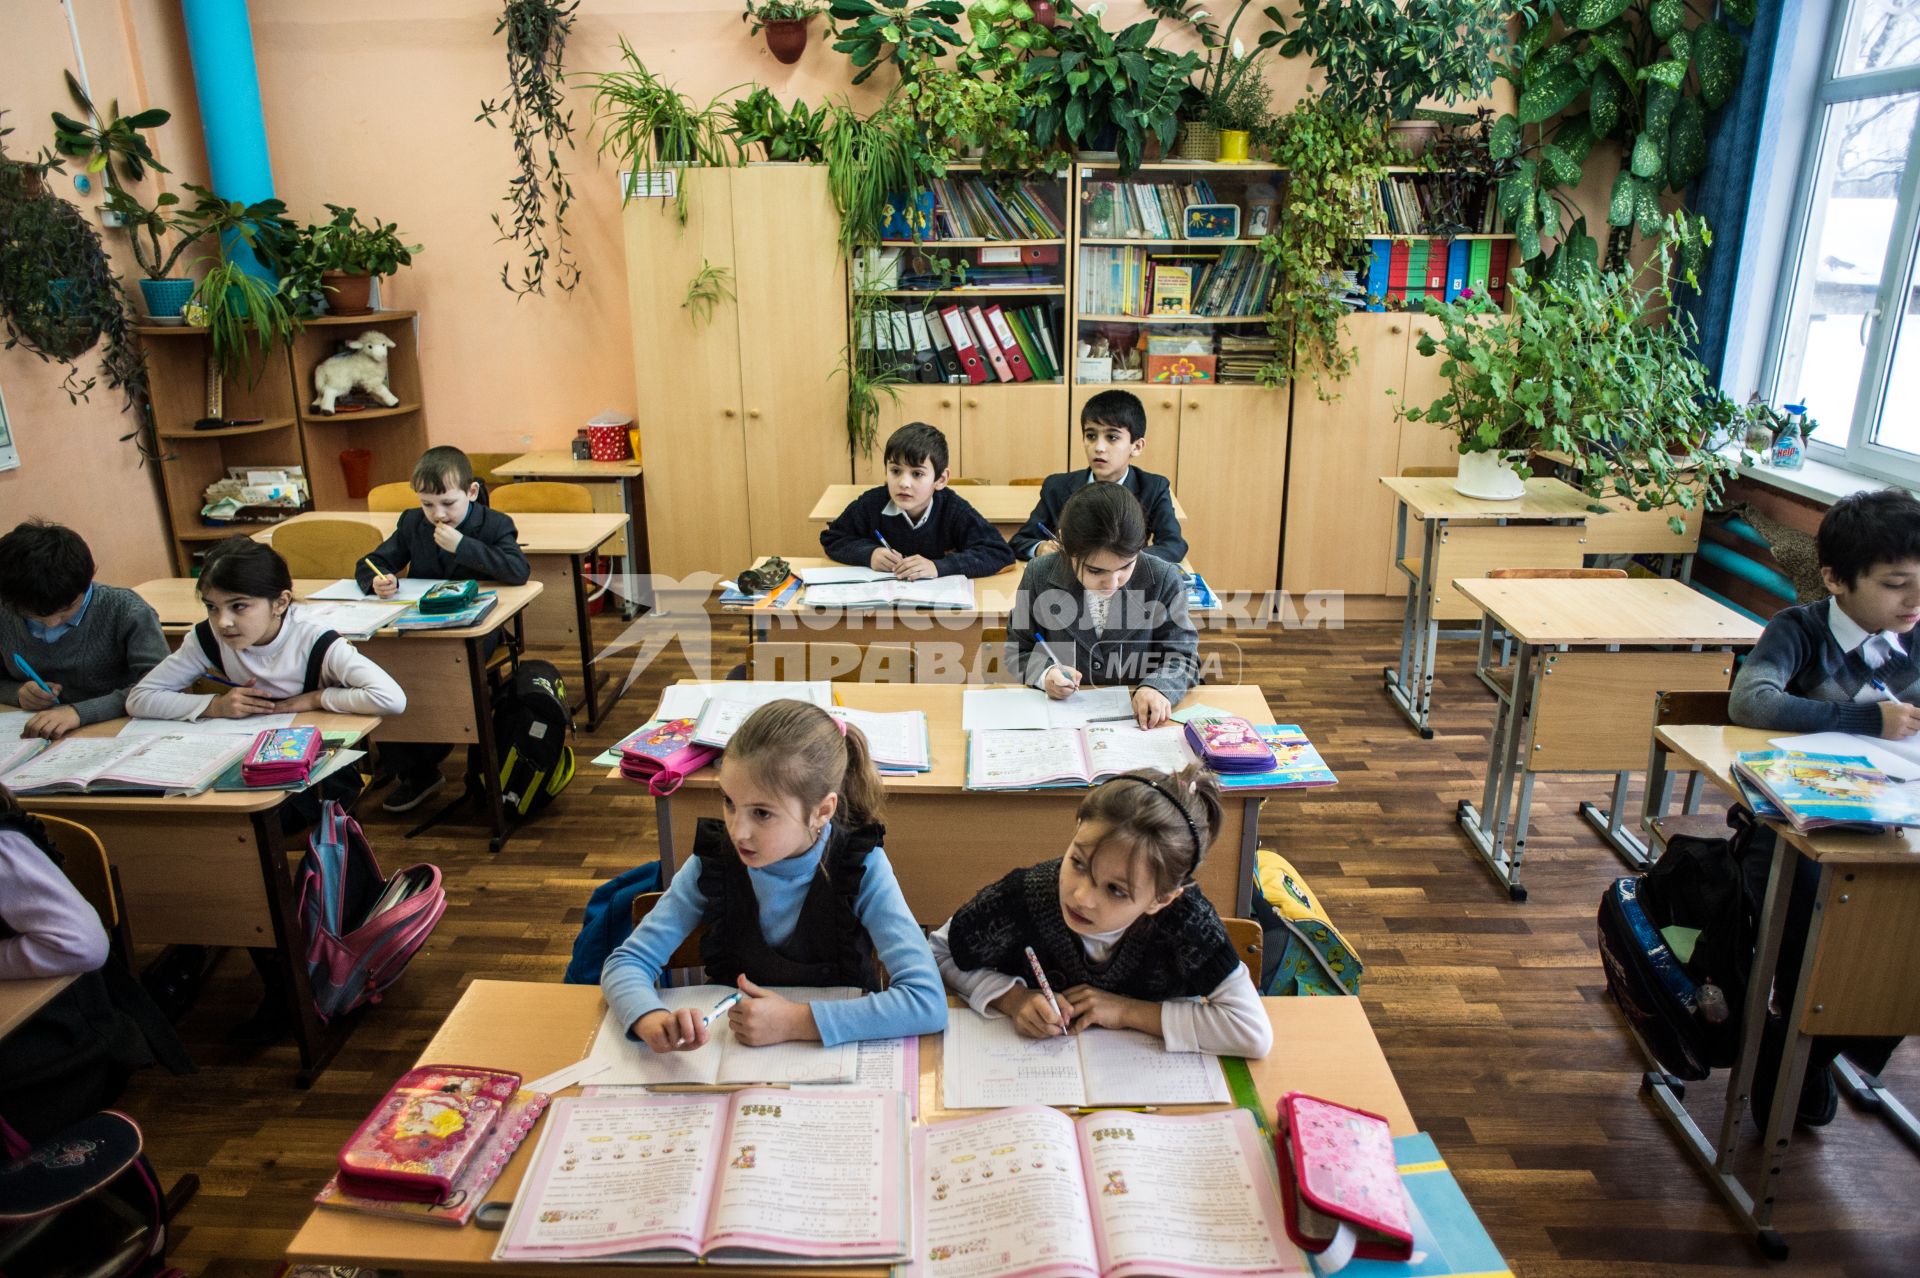 Тверская область, Рождествено. Ученики на занятиях в школе.